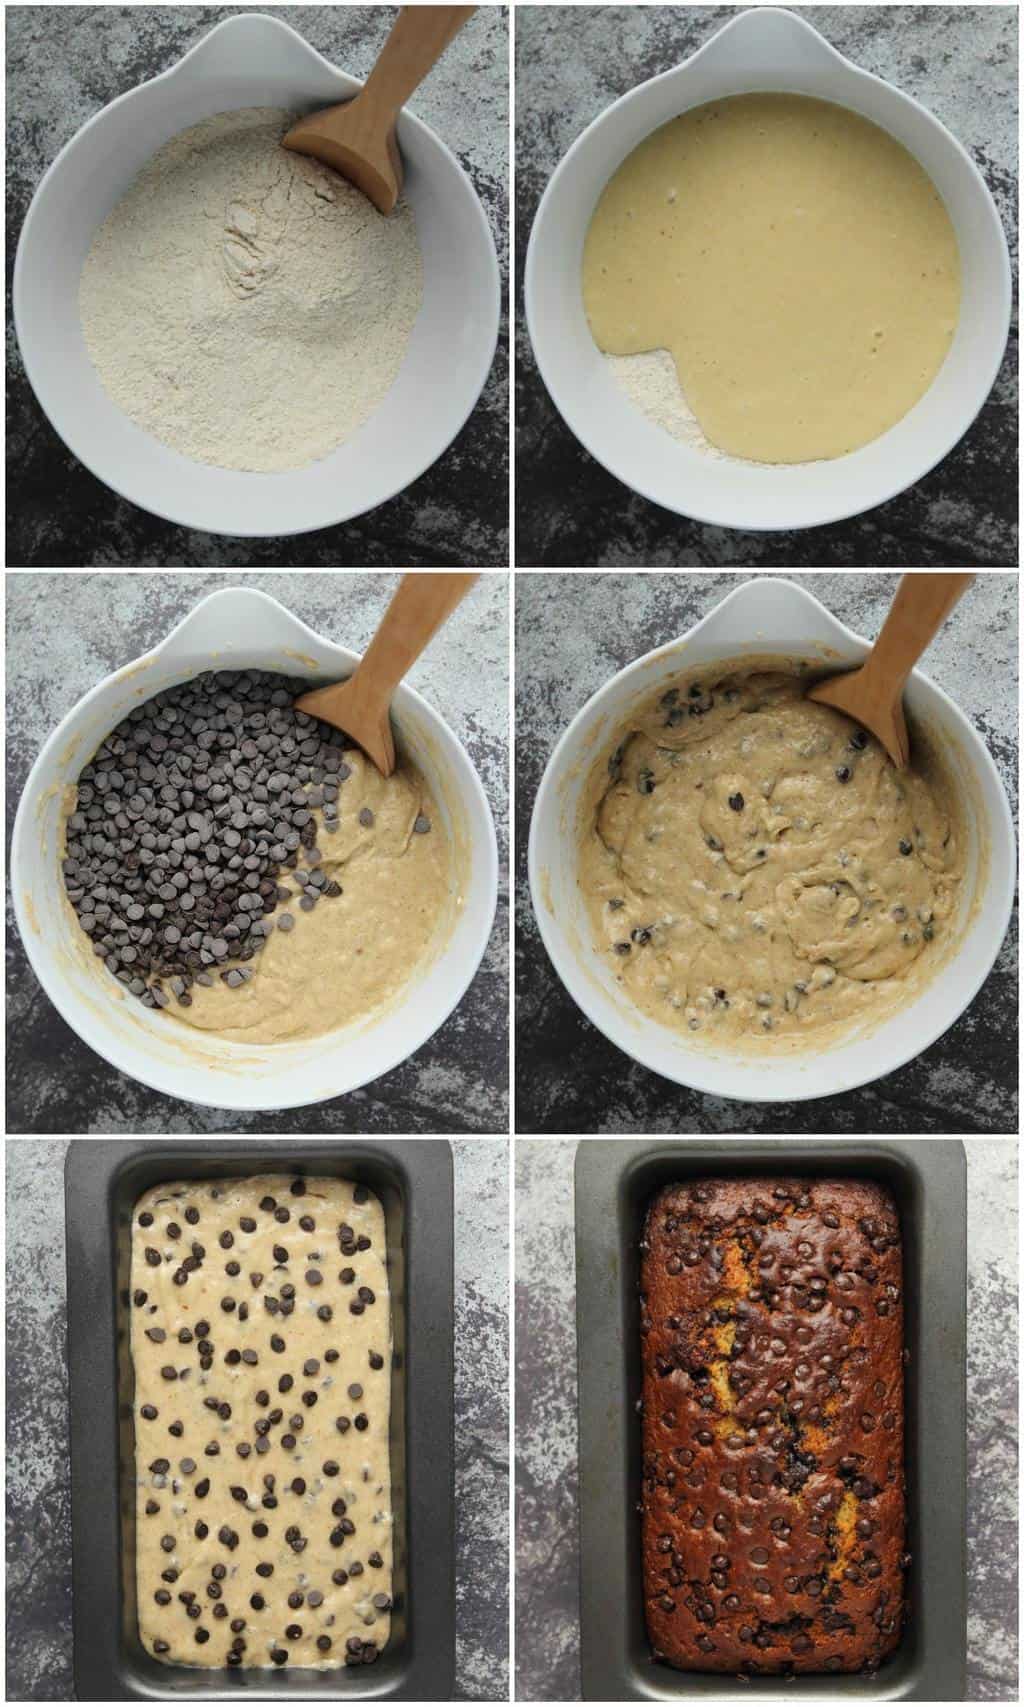  Passo dopo passo processo photo collage di fare vegan chocolate chip banana bread.